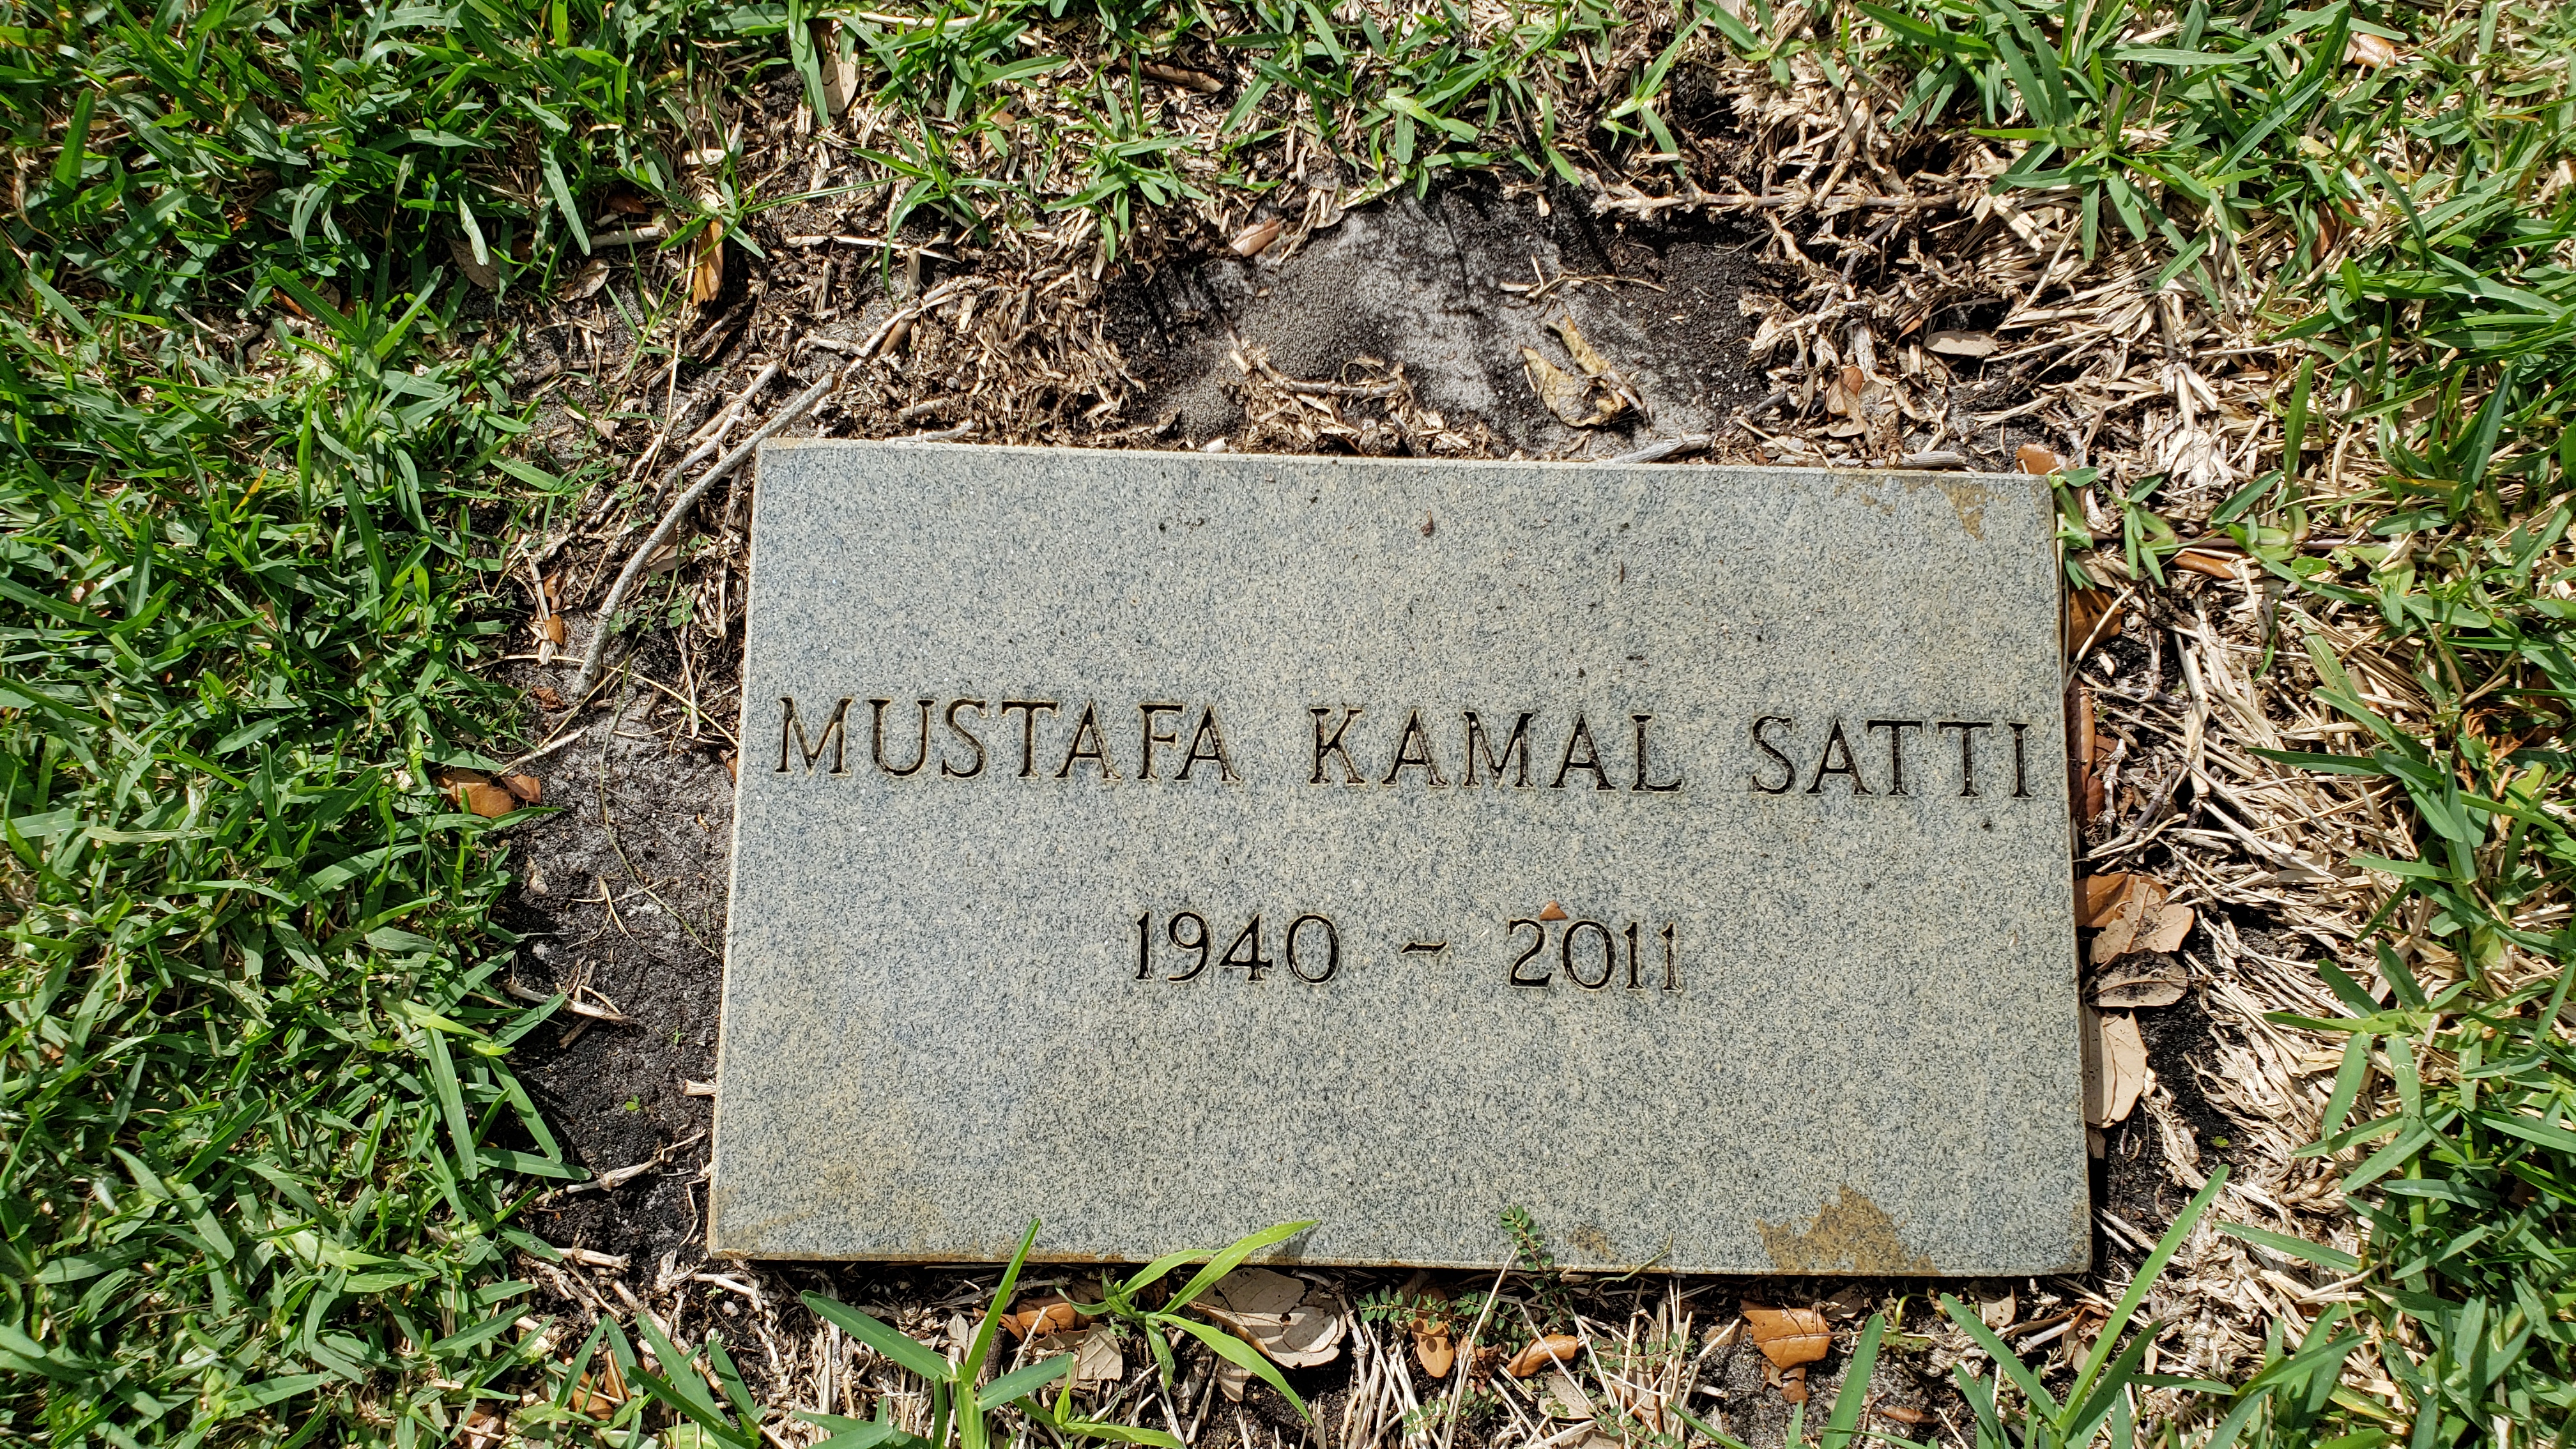 Mustafa Kamal Satti